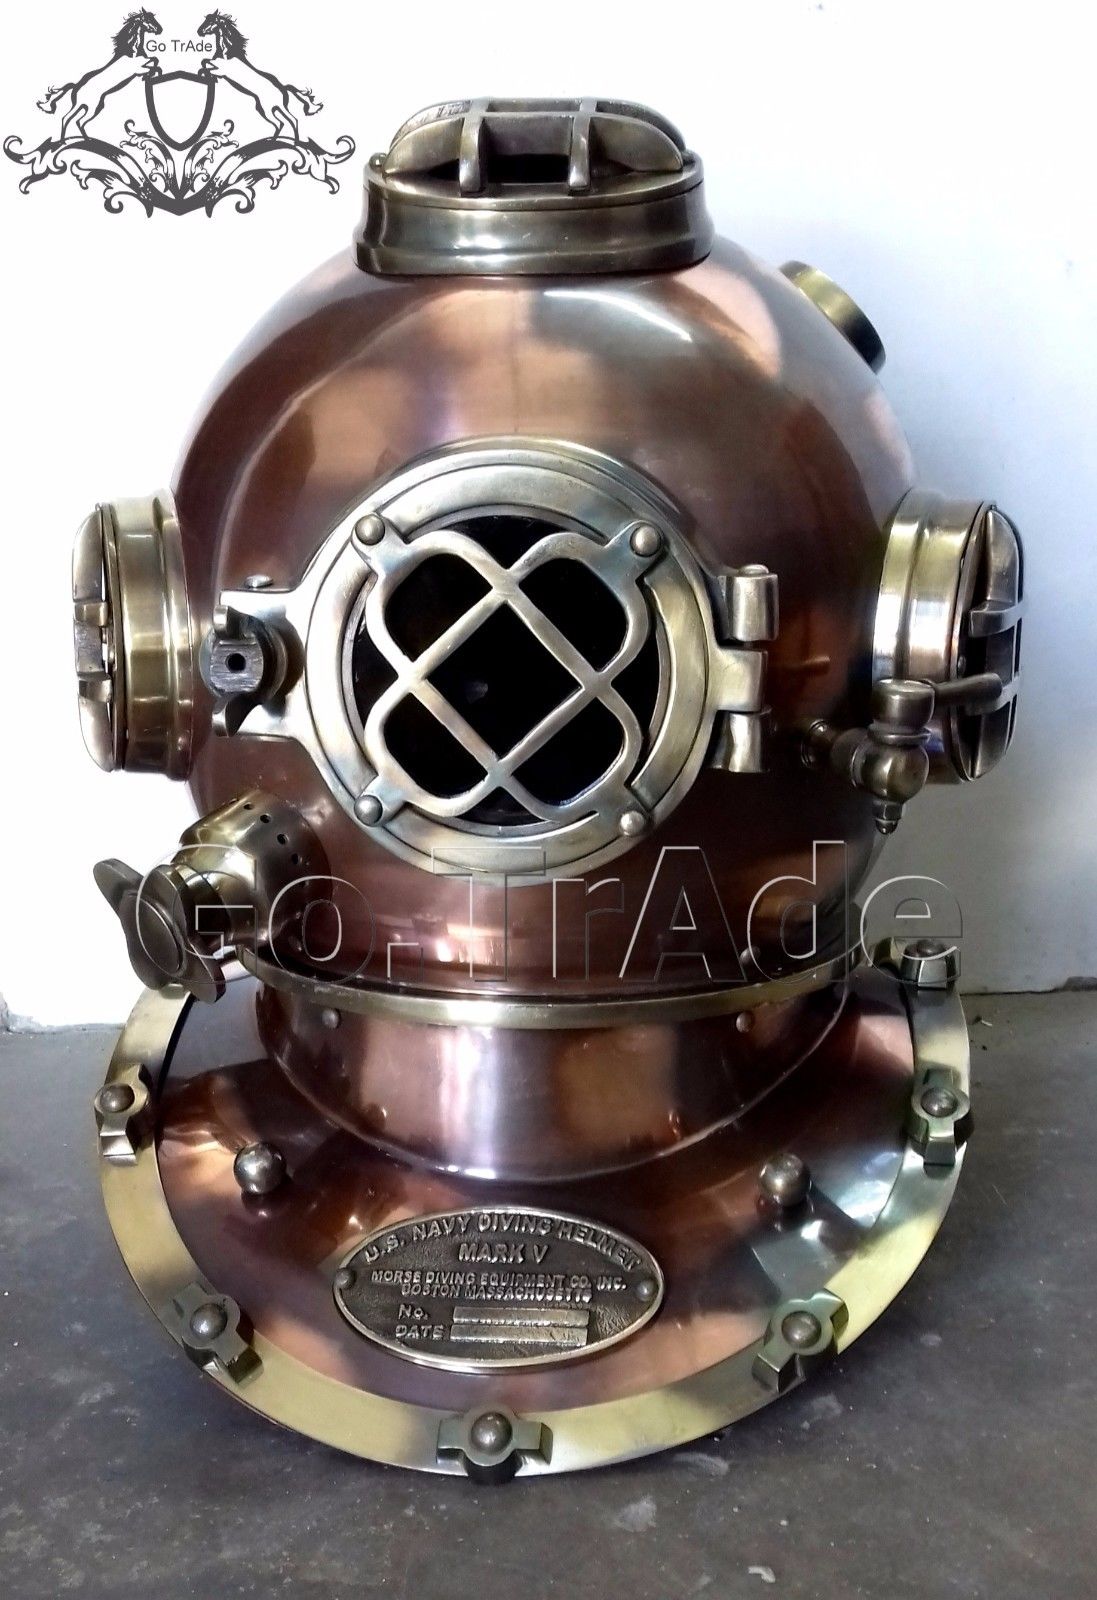 U.S Navy Vintage Dive Helmet Mark V Antique Diving Divers Marriage GIFT Helmet